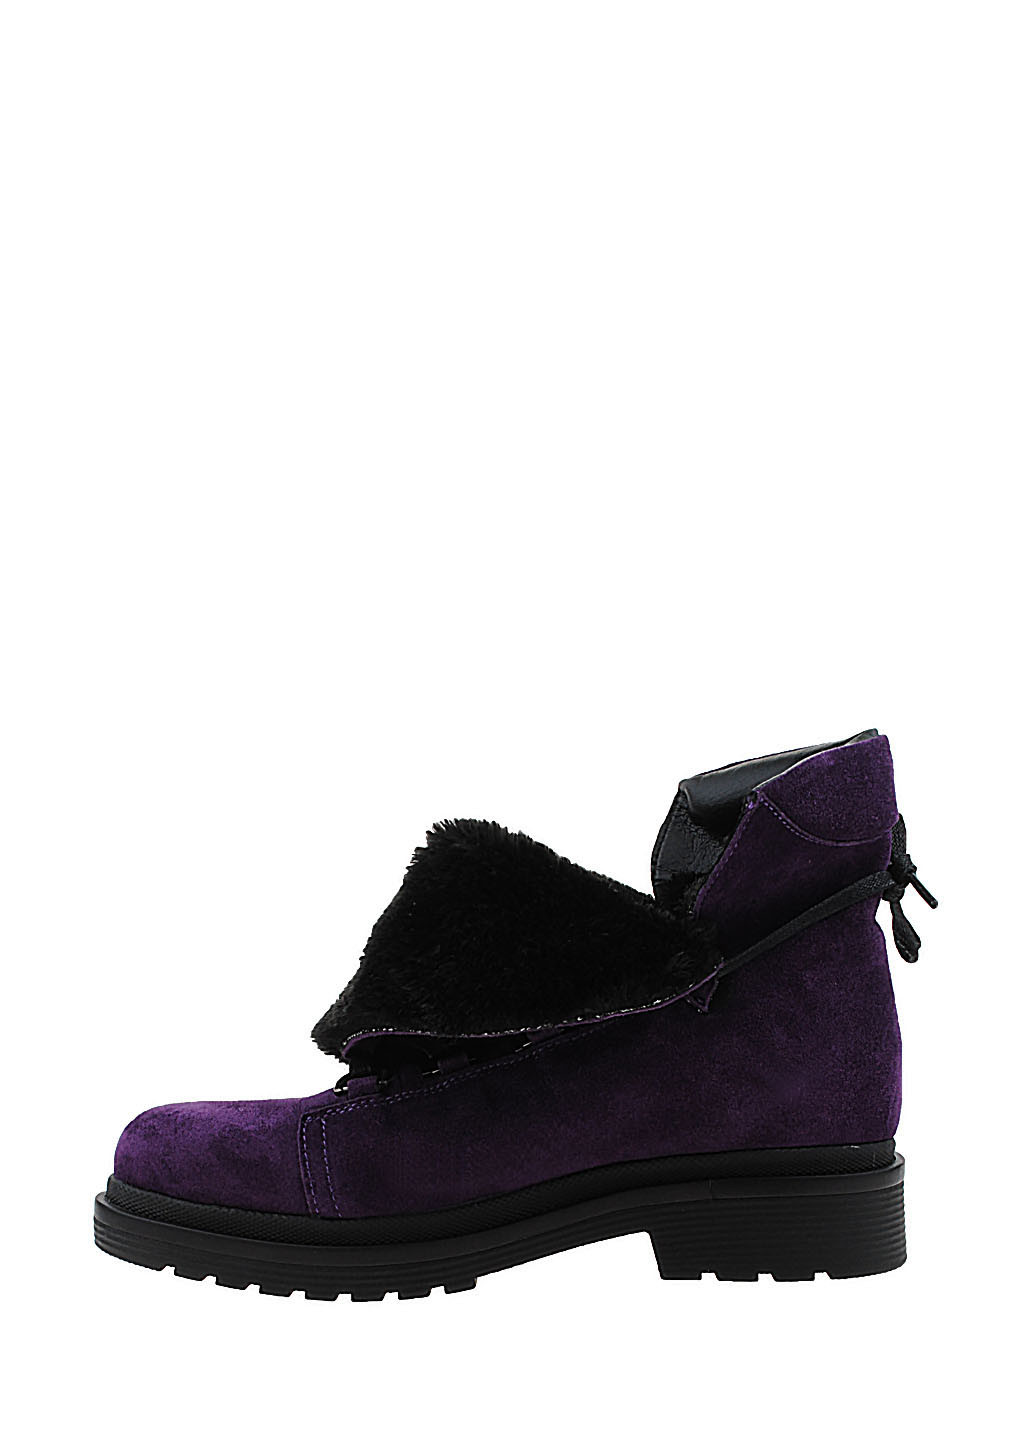 Зимние ботинки r2026-373-11 фиолетовый Amedea из натуральной замши